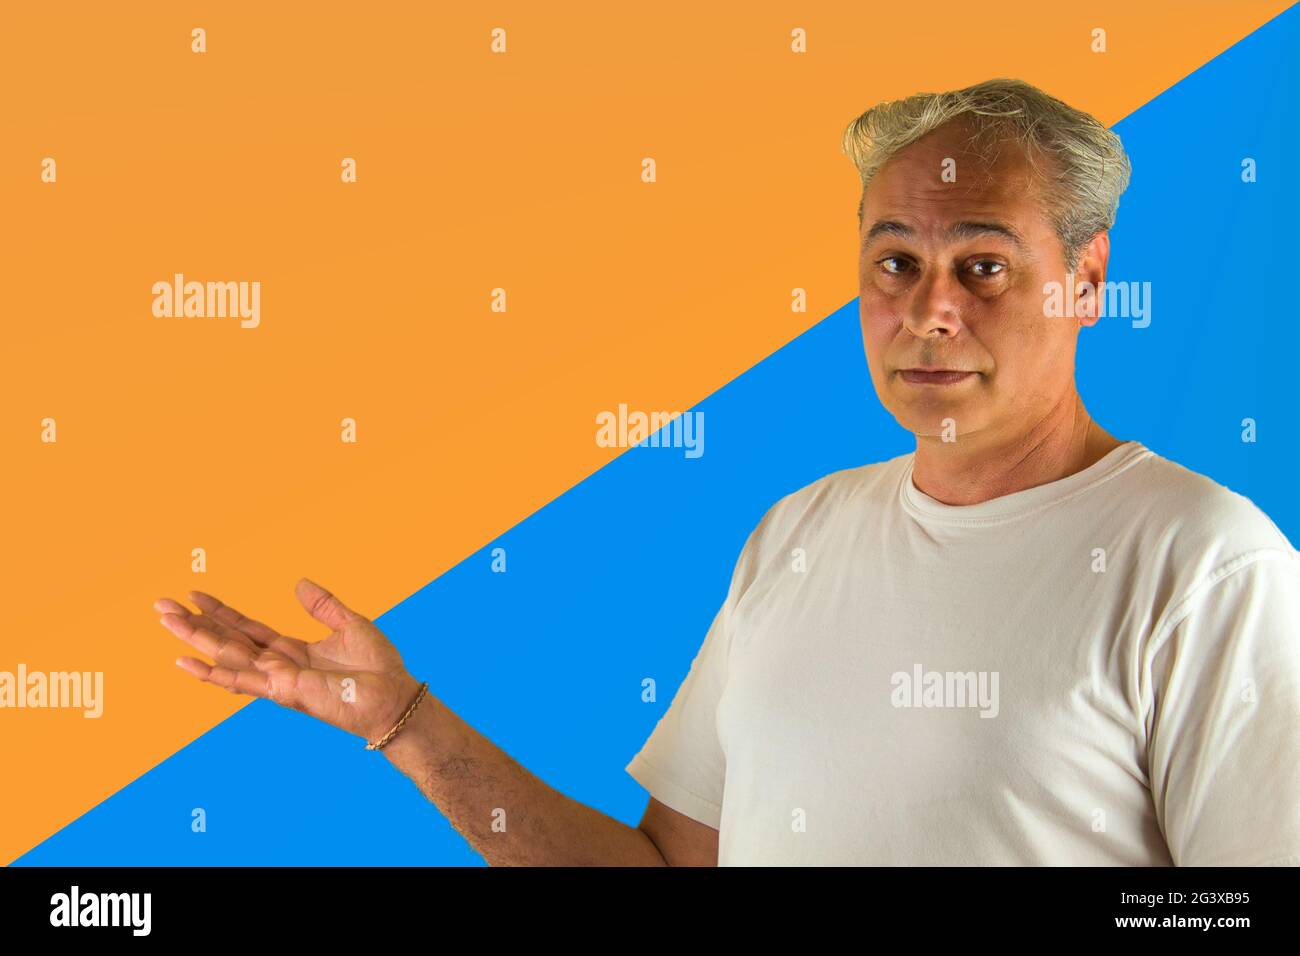 uomo dai capelli grigi che mostra qualcosa con la mano su uno sfondo blu e arancione Foto Stock